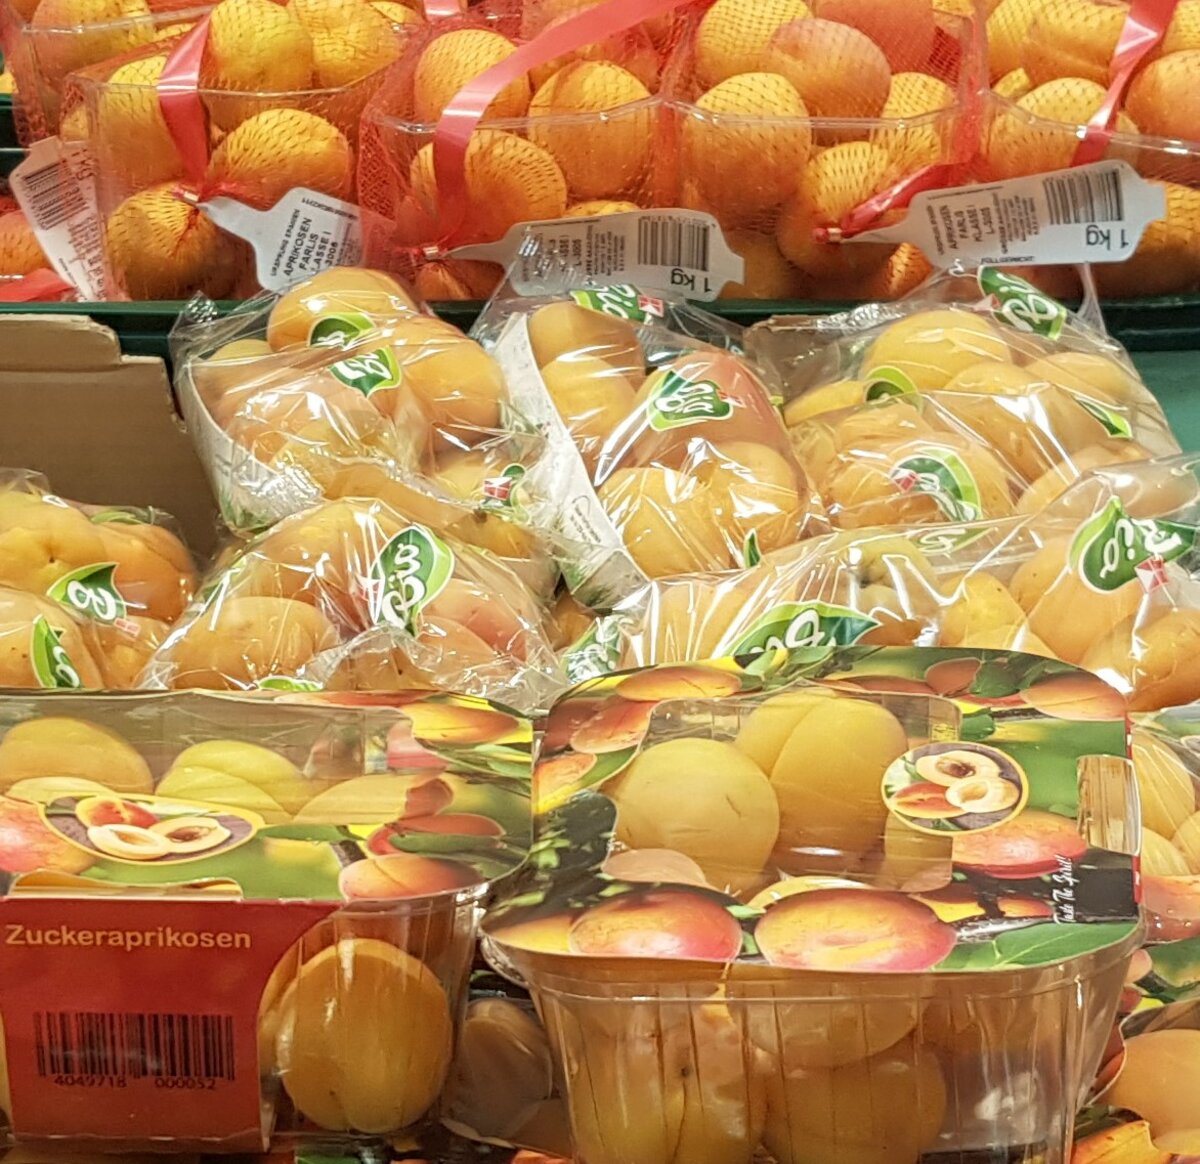 Abfallvermeidung beim Einkaufen – Negativbeispiel: In Plastikfolie verpackte Früchte, unnötige Verpackung, Verpackungsmüll, Plastikschalen, Aprikosen